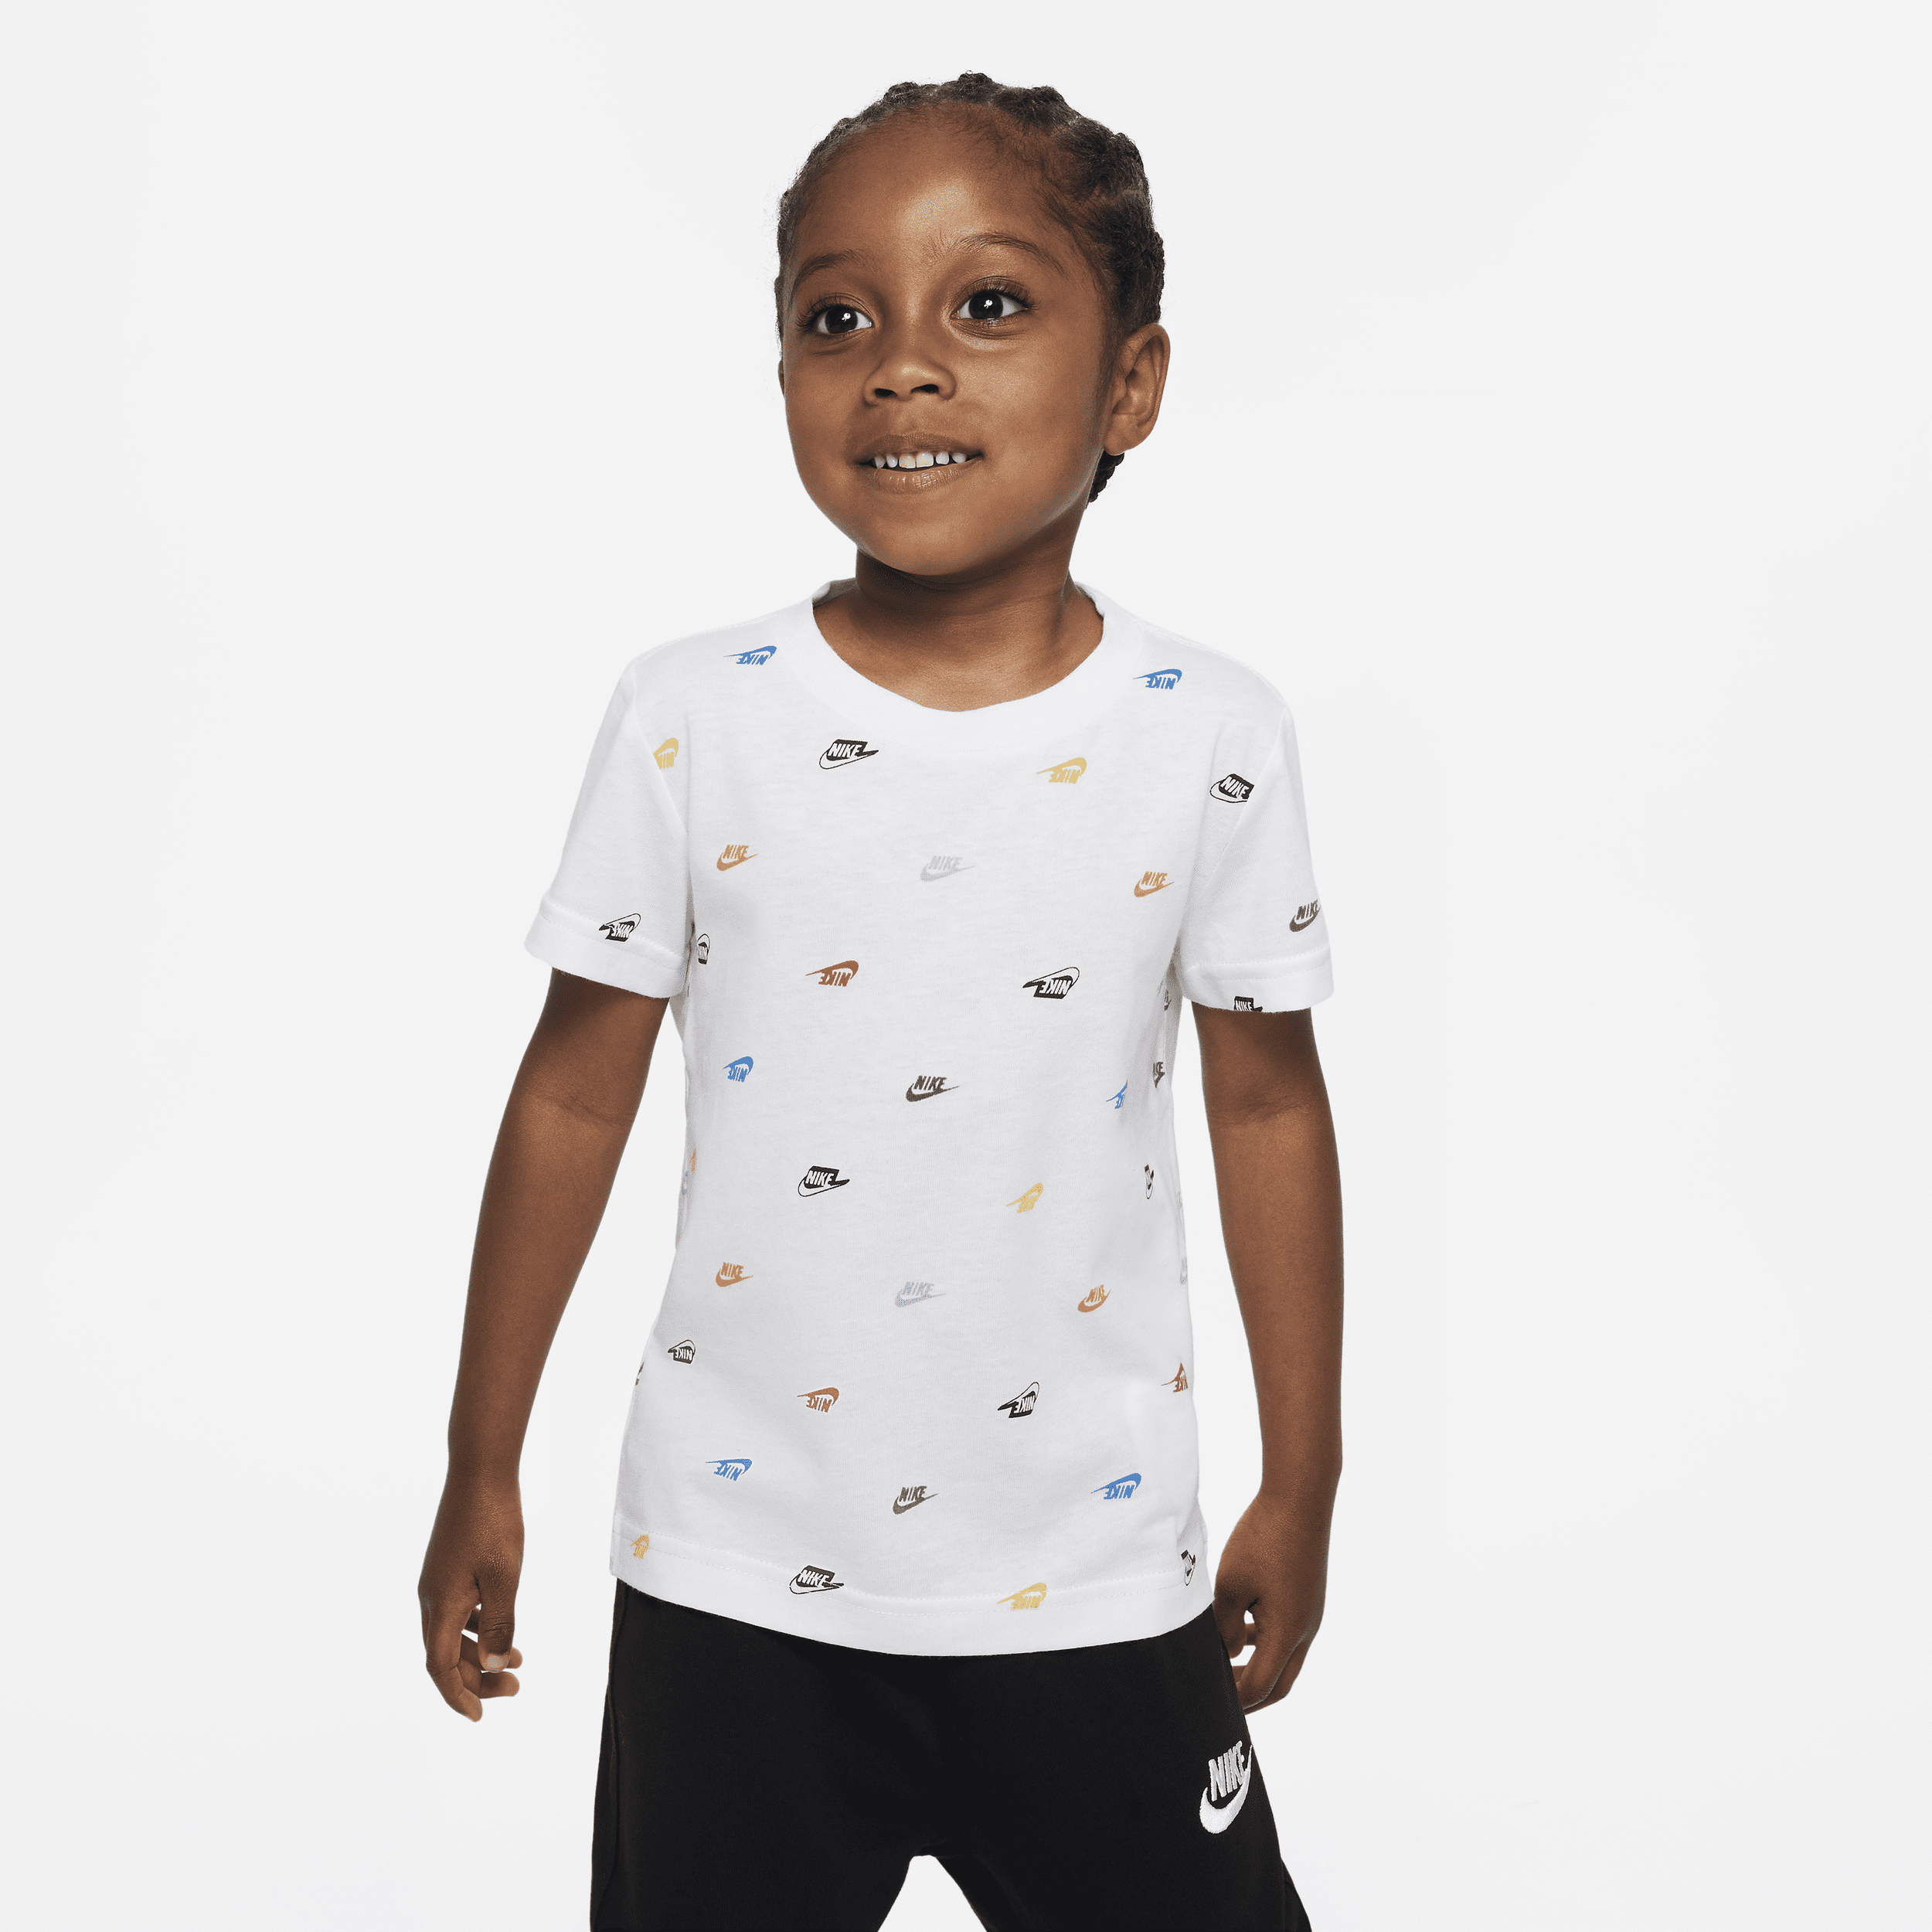 T-shirt z monogramem dla maluchów Nike Futura - Biel